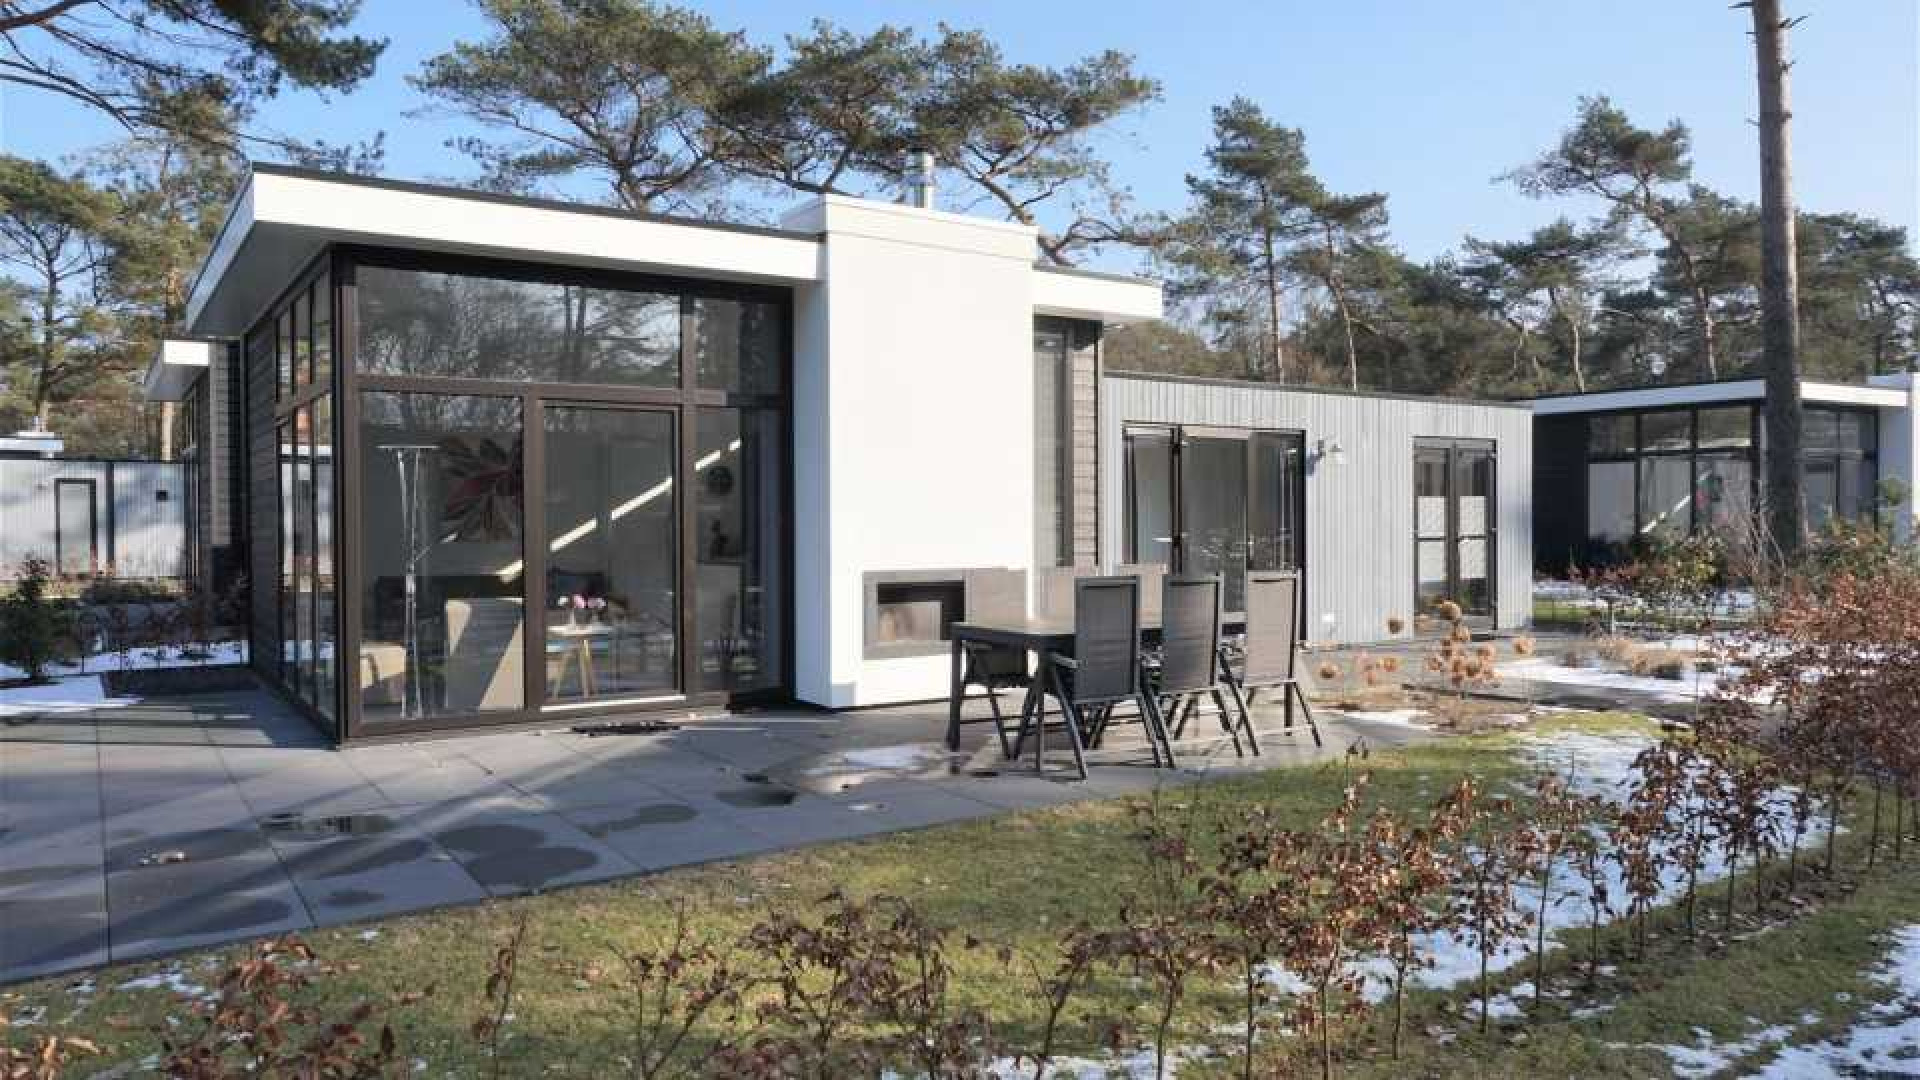 Louis van Gaal koopt recreatie bungalow. Zie foto's